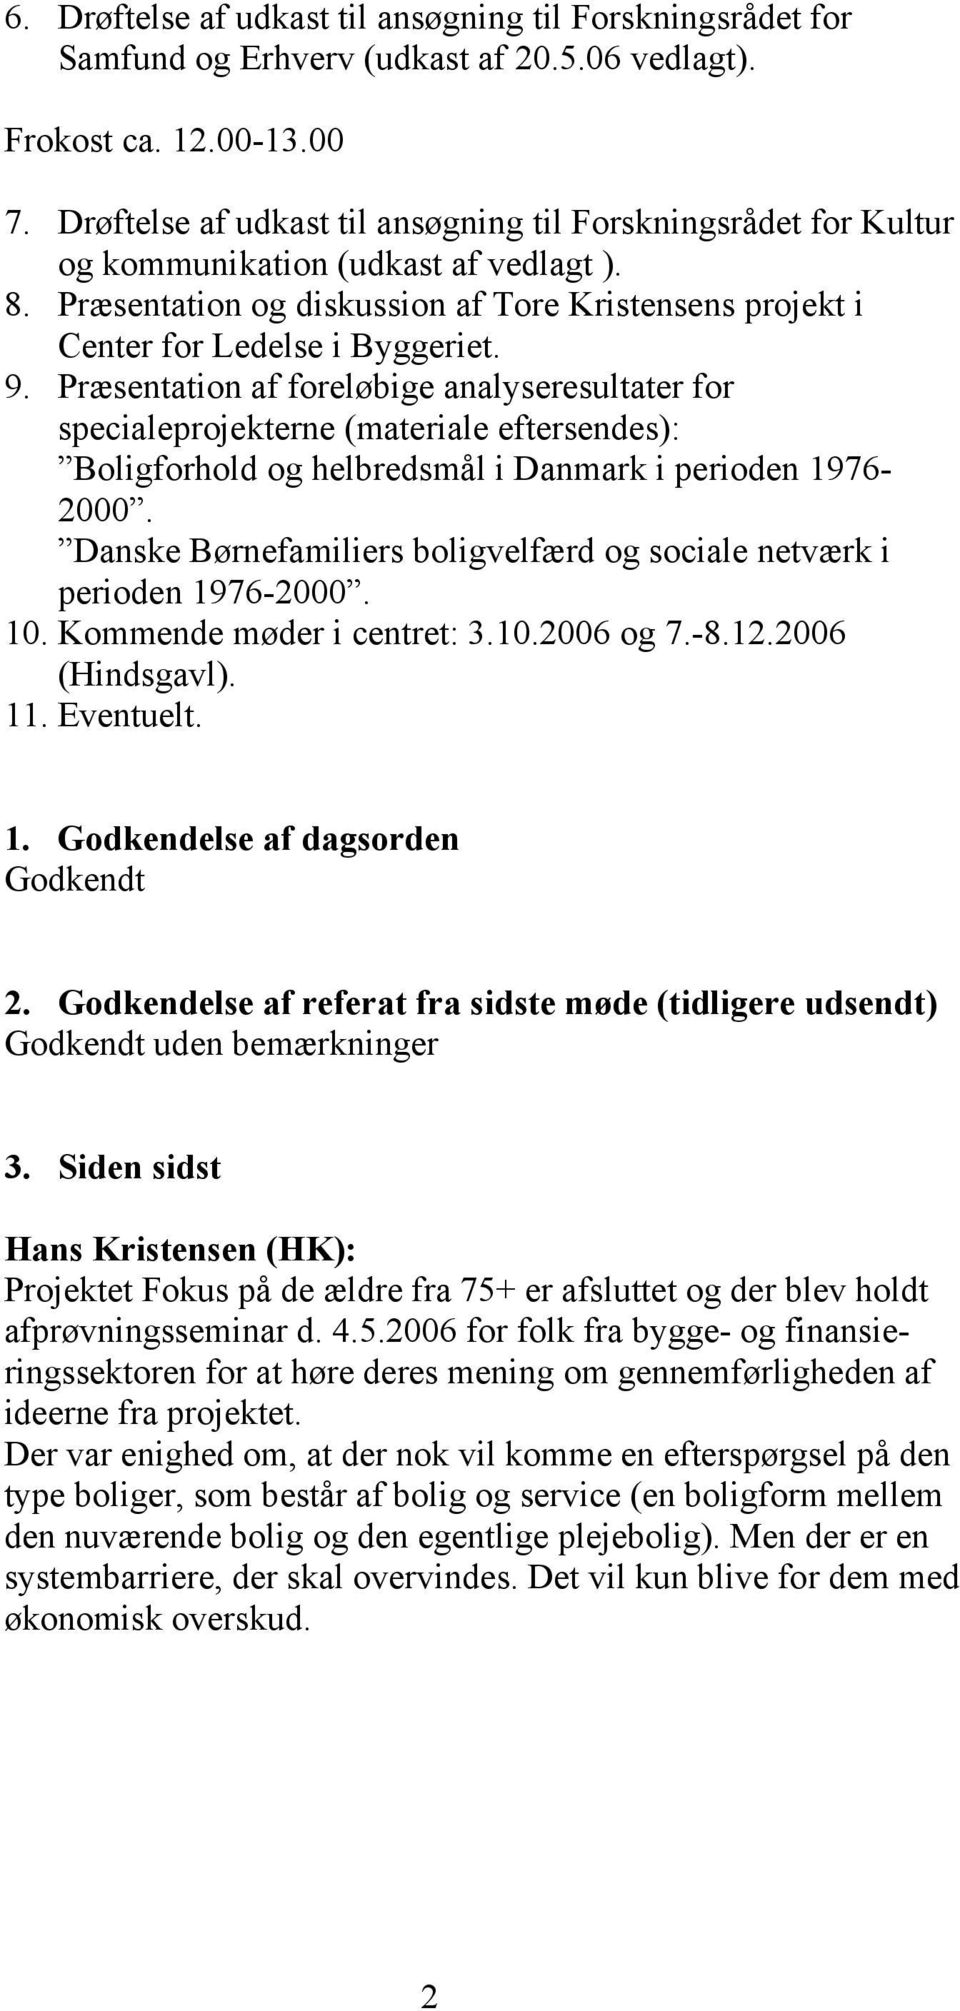 Præsentation af foreløbige analyseresultater for specialeprojekterne (materiale eftersendes): Boligforhold og helbredsmål i Danmark i perioden 1976-2000.